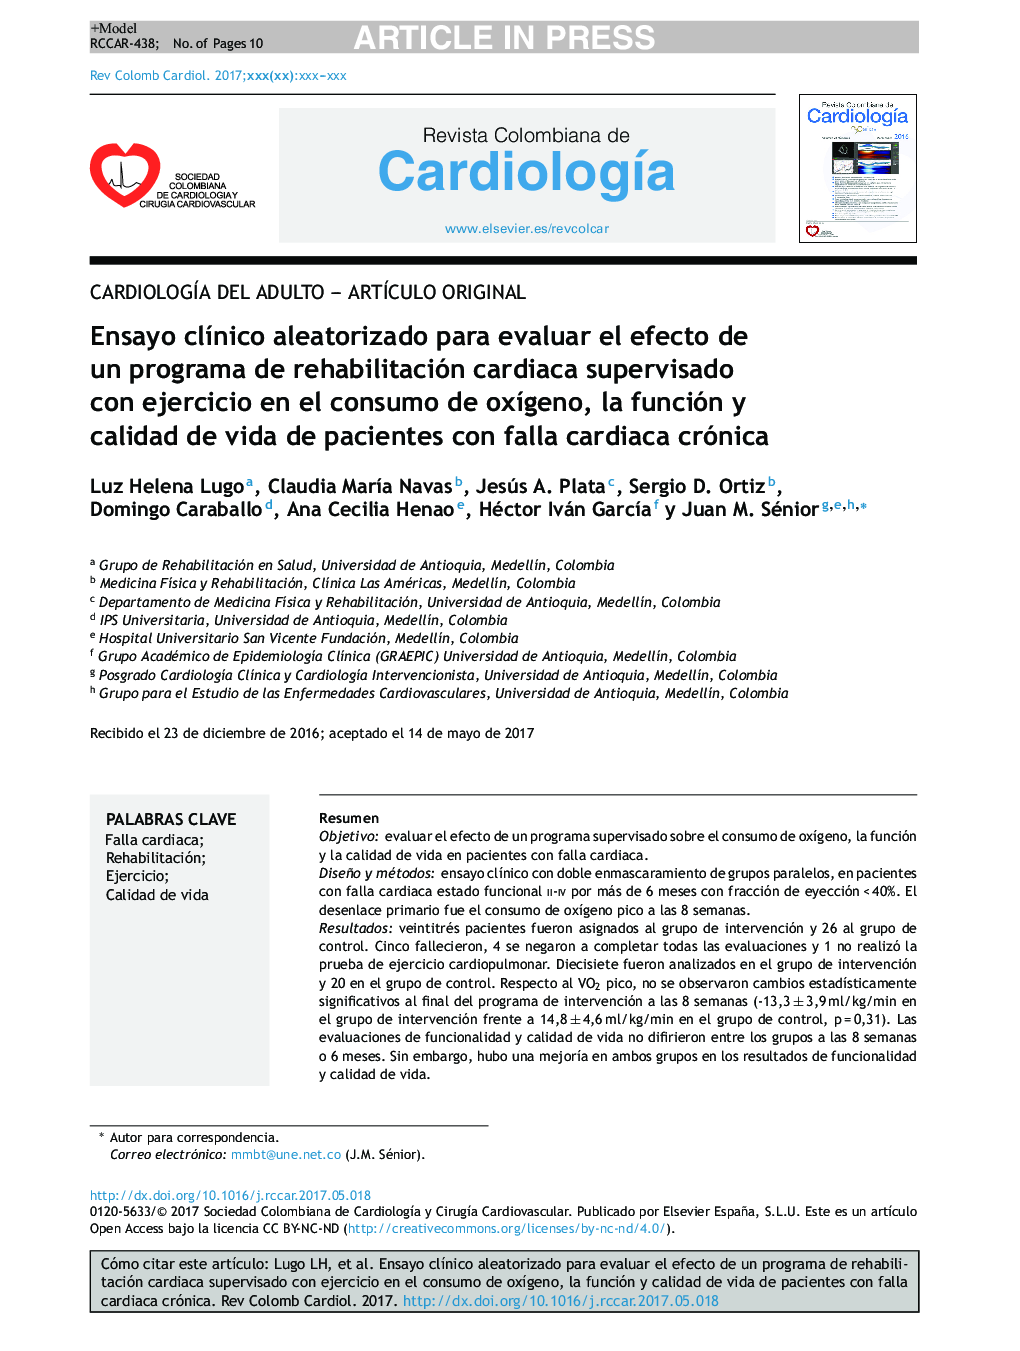 Ensayo clÃ­nico aleatorizado para evaluar el efecto de un programa de rehabilitación cardiaca supervisado con ejercicio en el consumo de oxÃ­geno, la función y calidad de vida de pacientes con falla cardiaca crónica